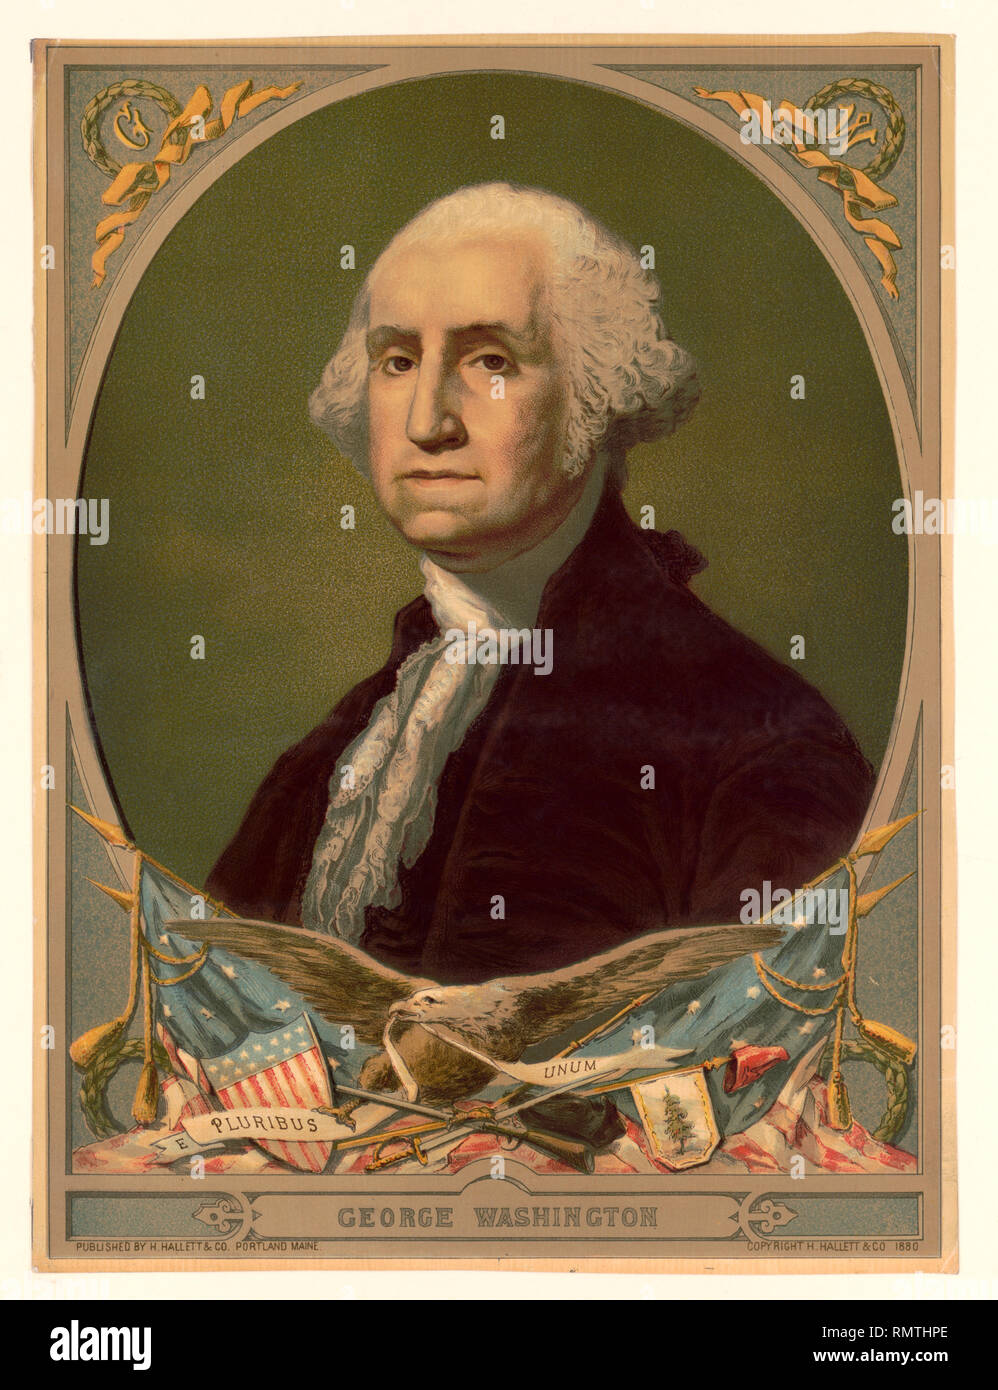 George Washington (1732-99), erster Präsident der Vereinigten Staaten, Kopf und Schultern Portrait von H. Hallett & Co., Portland, Maine, 1880 veröffentlicht. Stockfoto